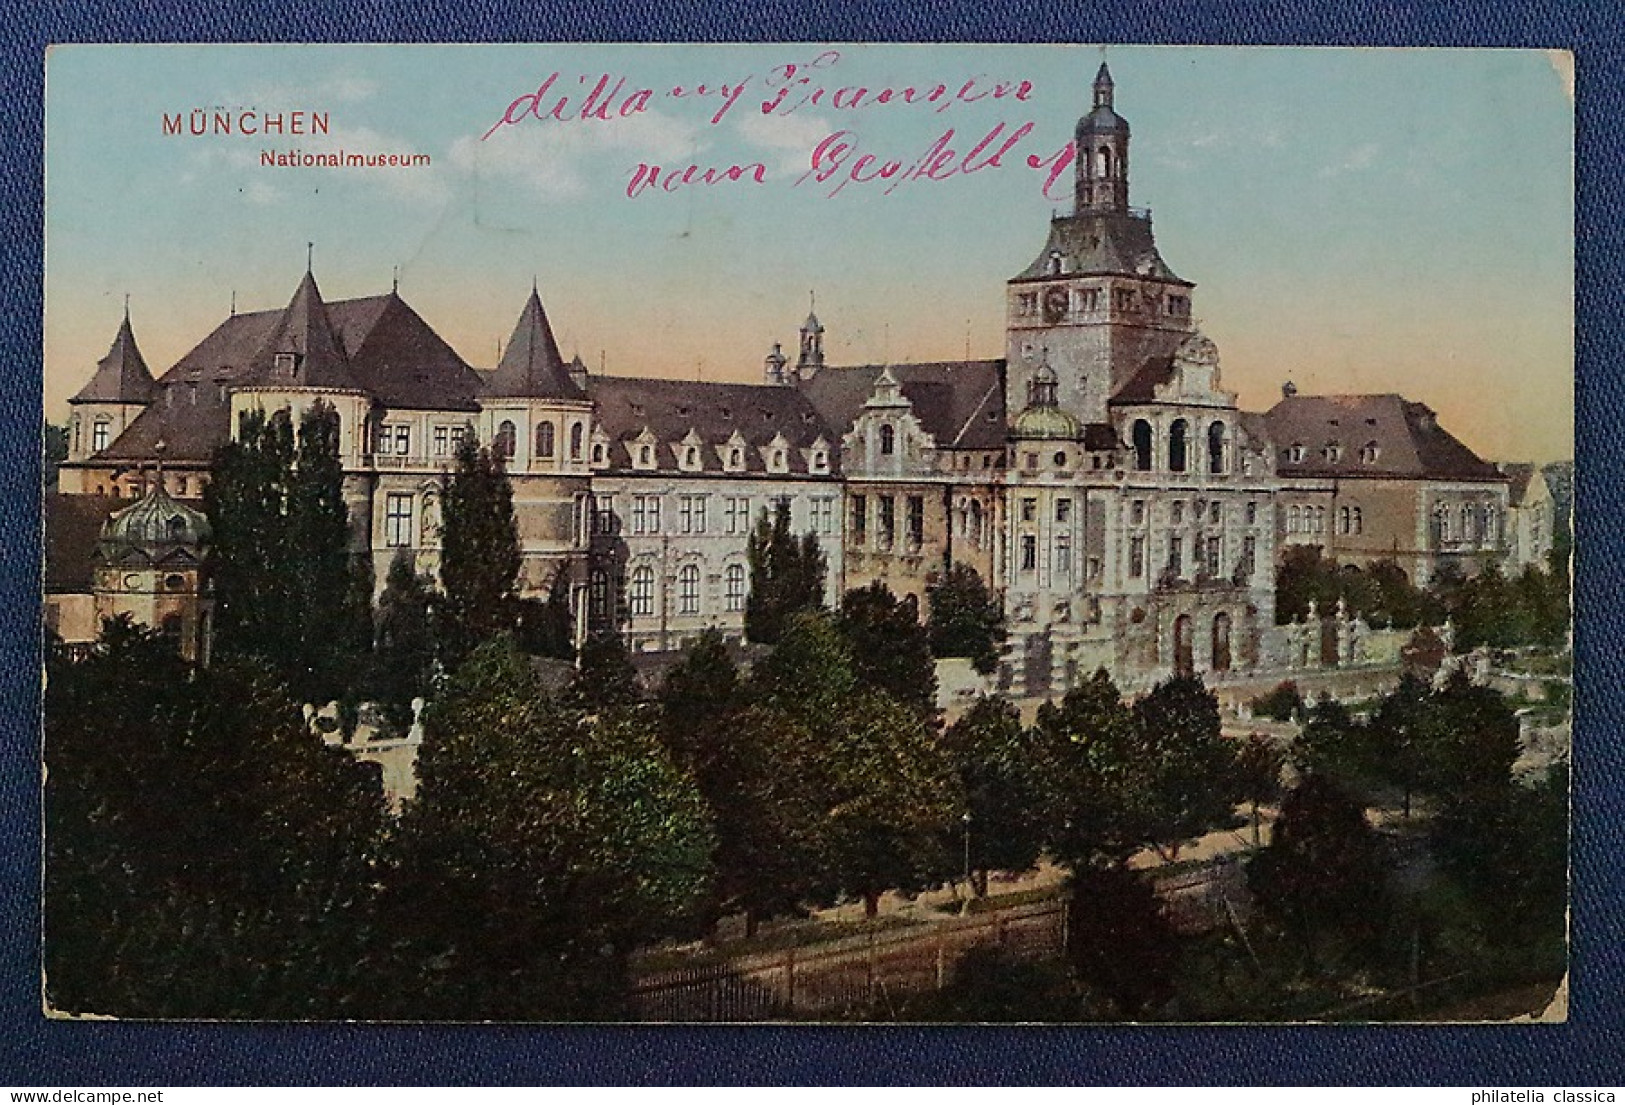 Bayern, 1910, drei Postkarten in die Schweiz, alle mit Schweizer Portomarken